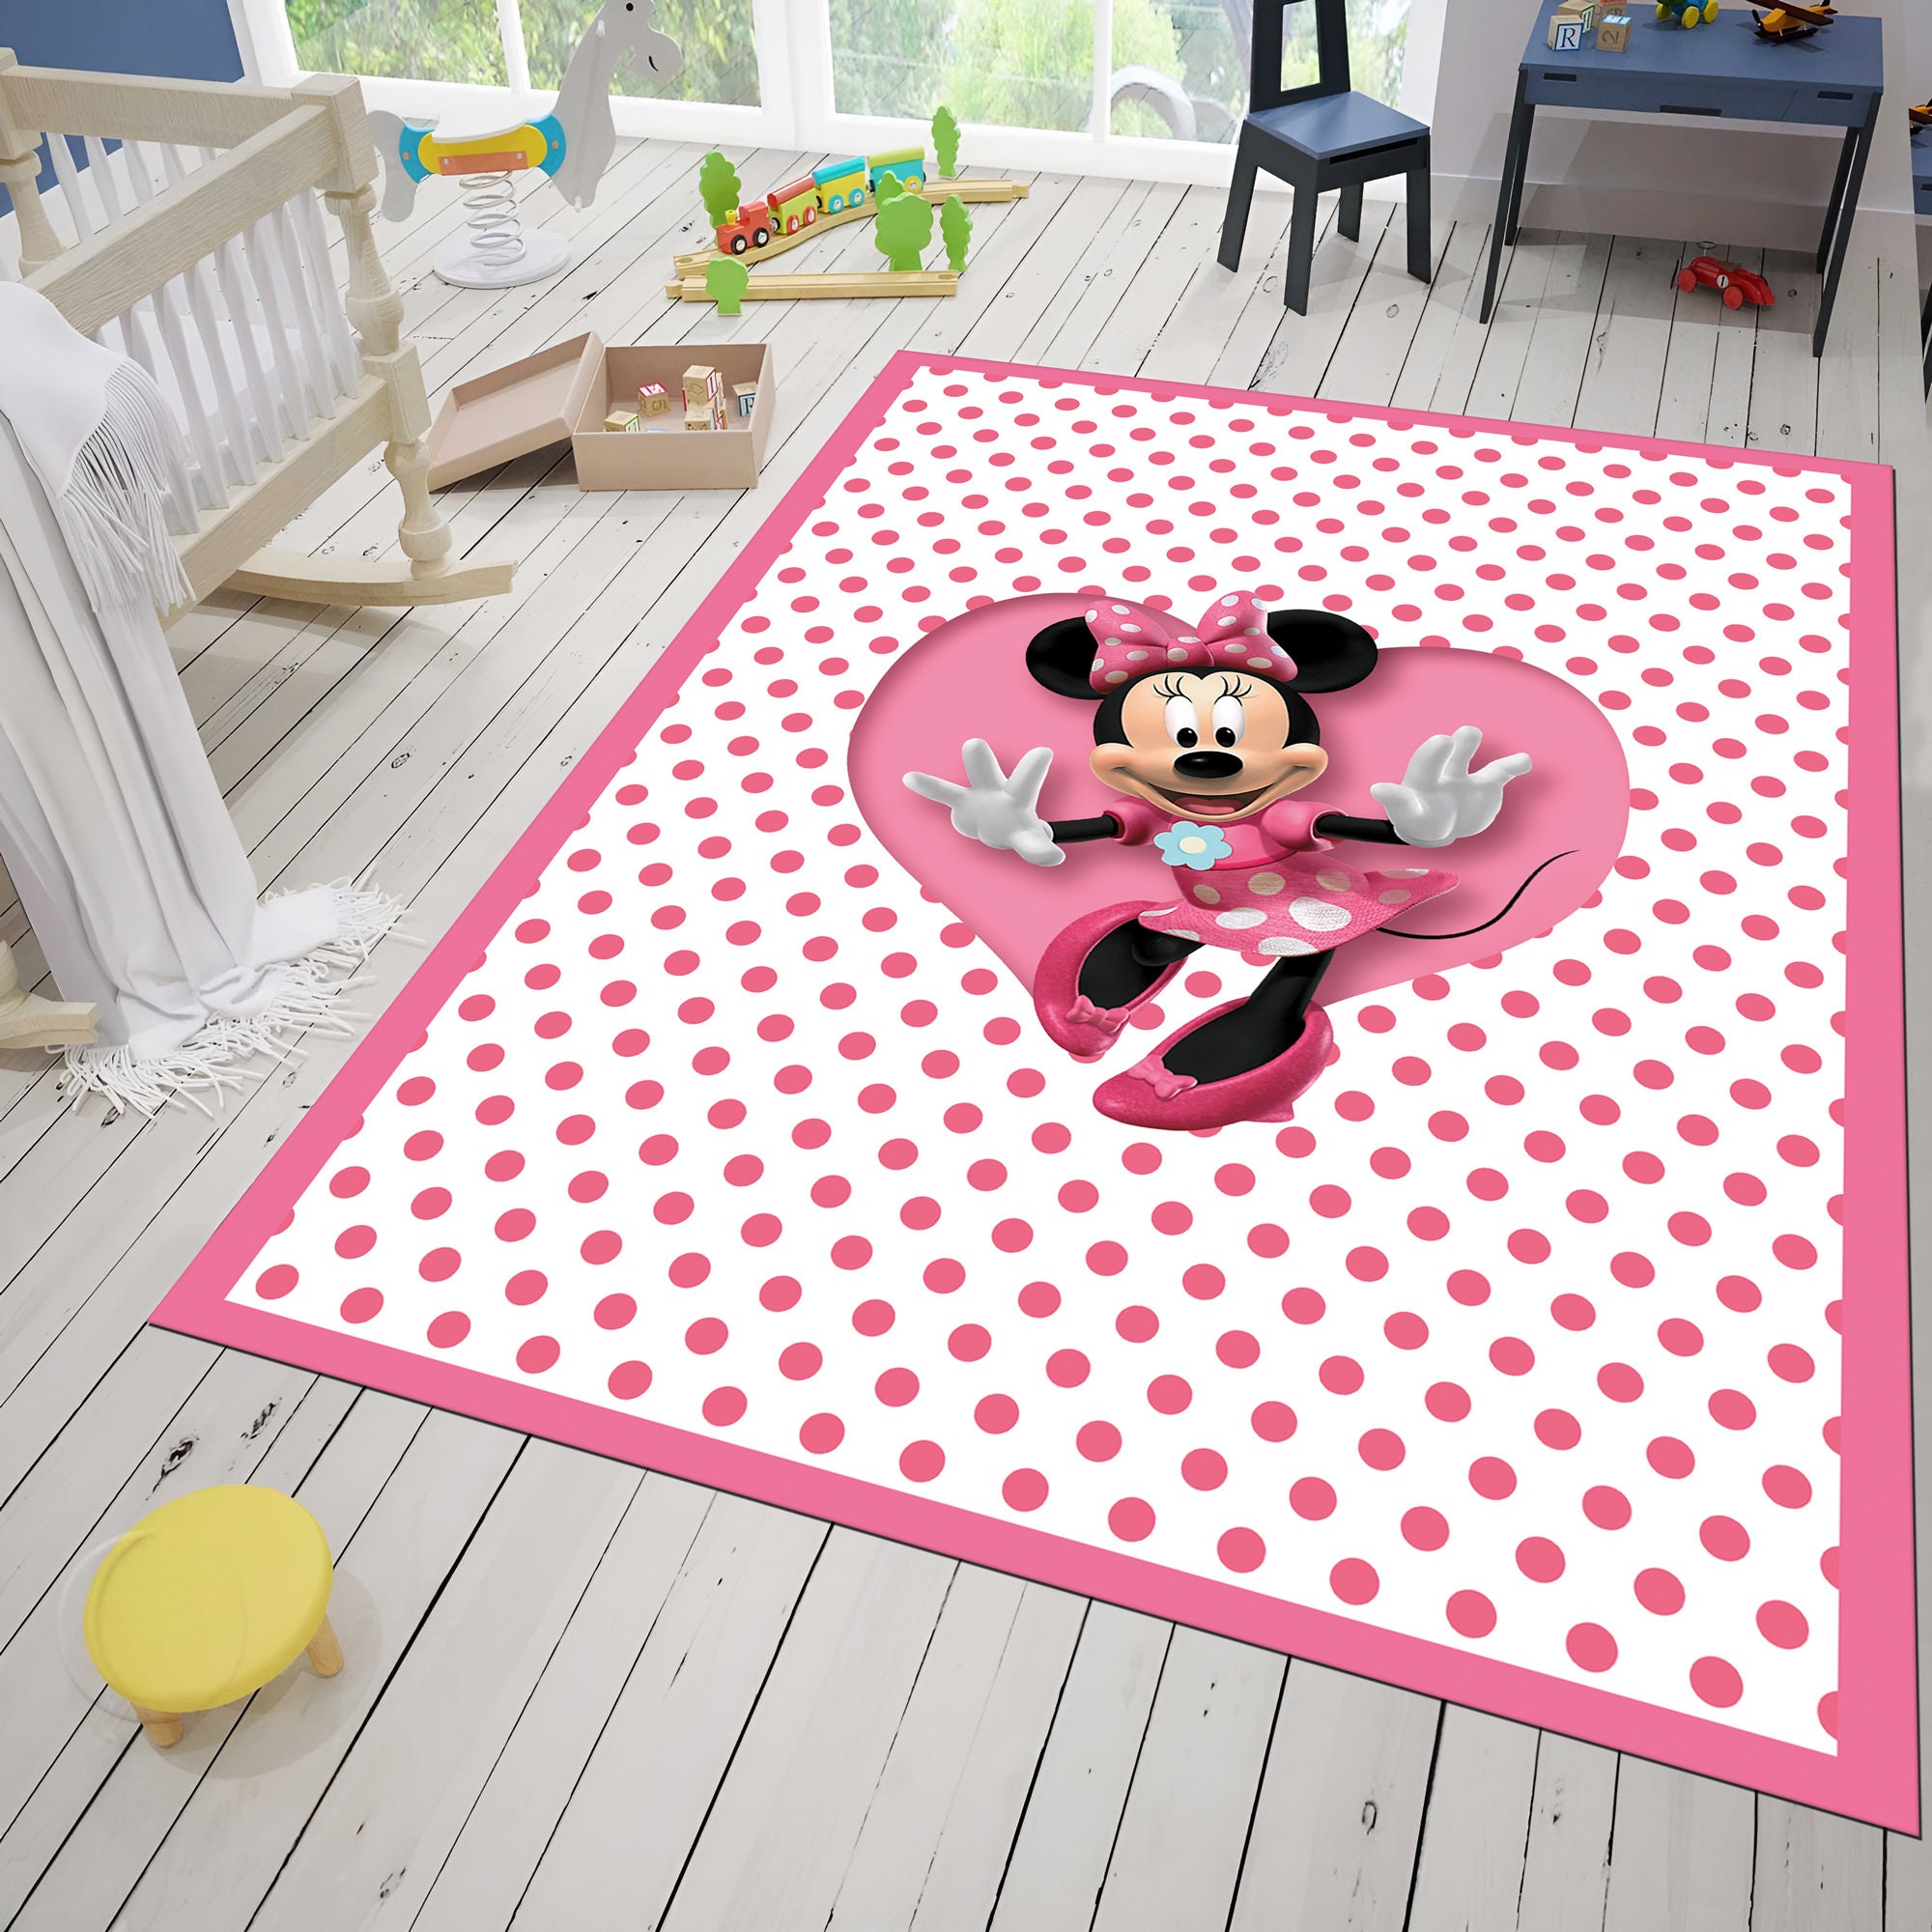 Discover Tappeto Mouse, tappeto rosa, tappeto per camera dei bambini